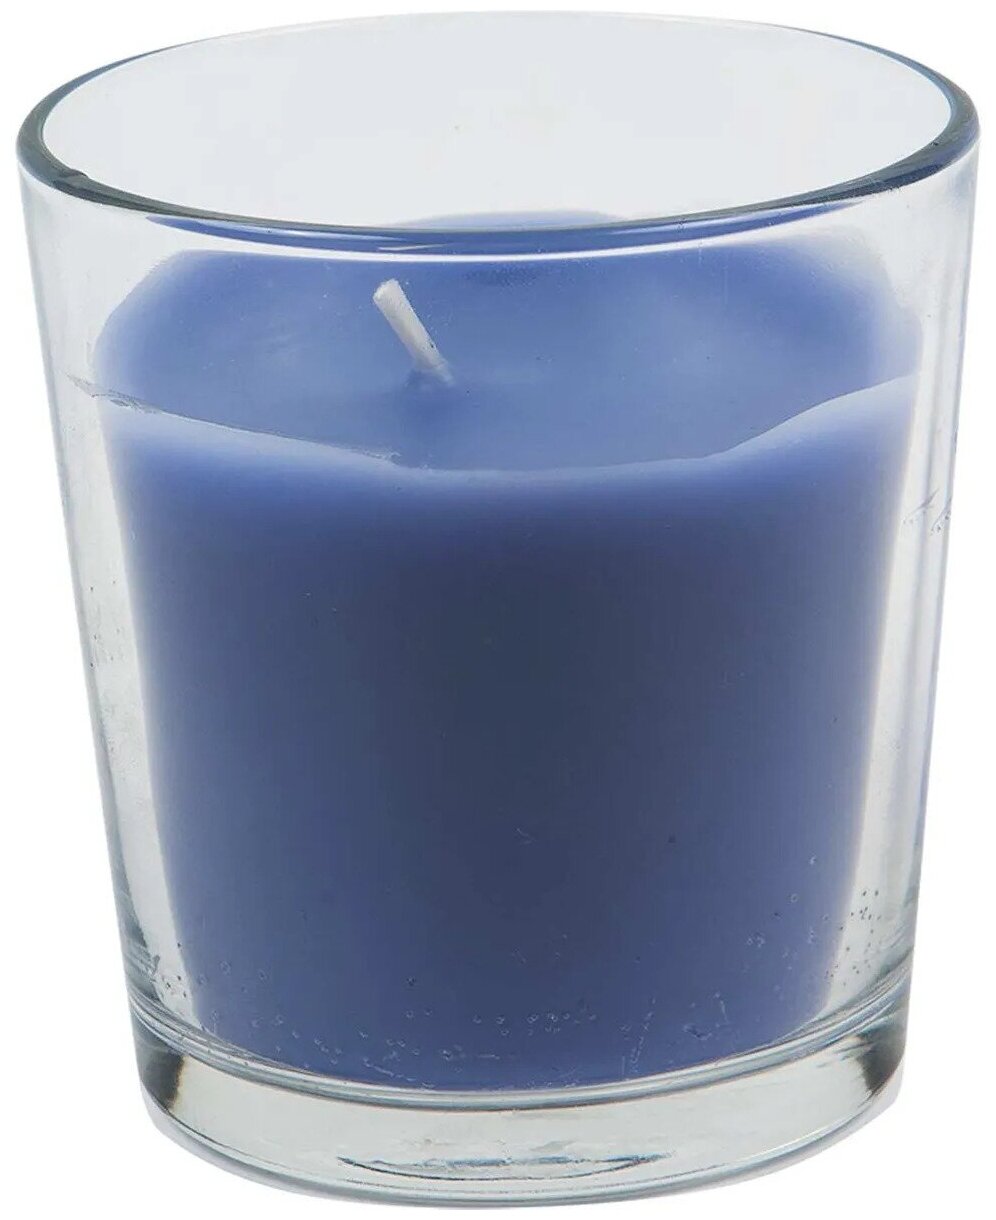 Свеча НЕ икеа ароматизированная в стакане со вкусом лаванды / ароматизированная свеча / свеча ароматизированная / свеча со вкусом лаванды